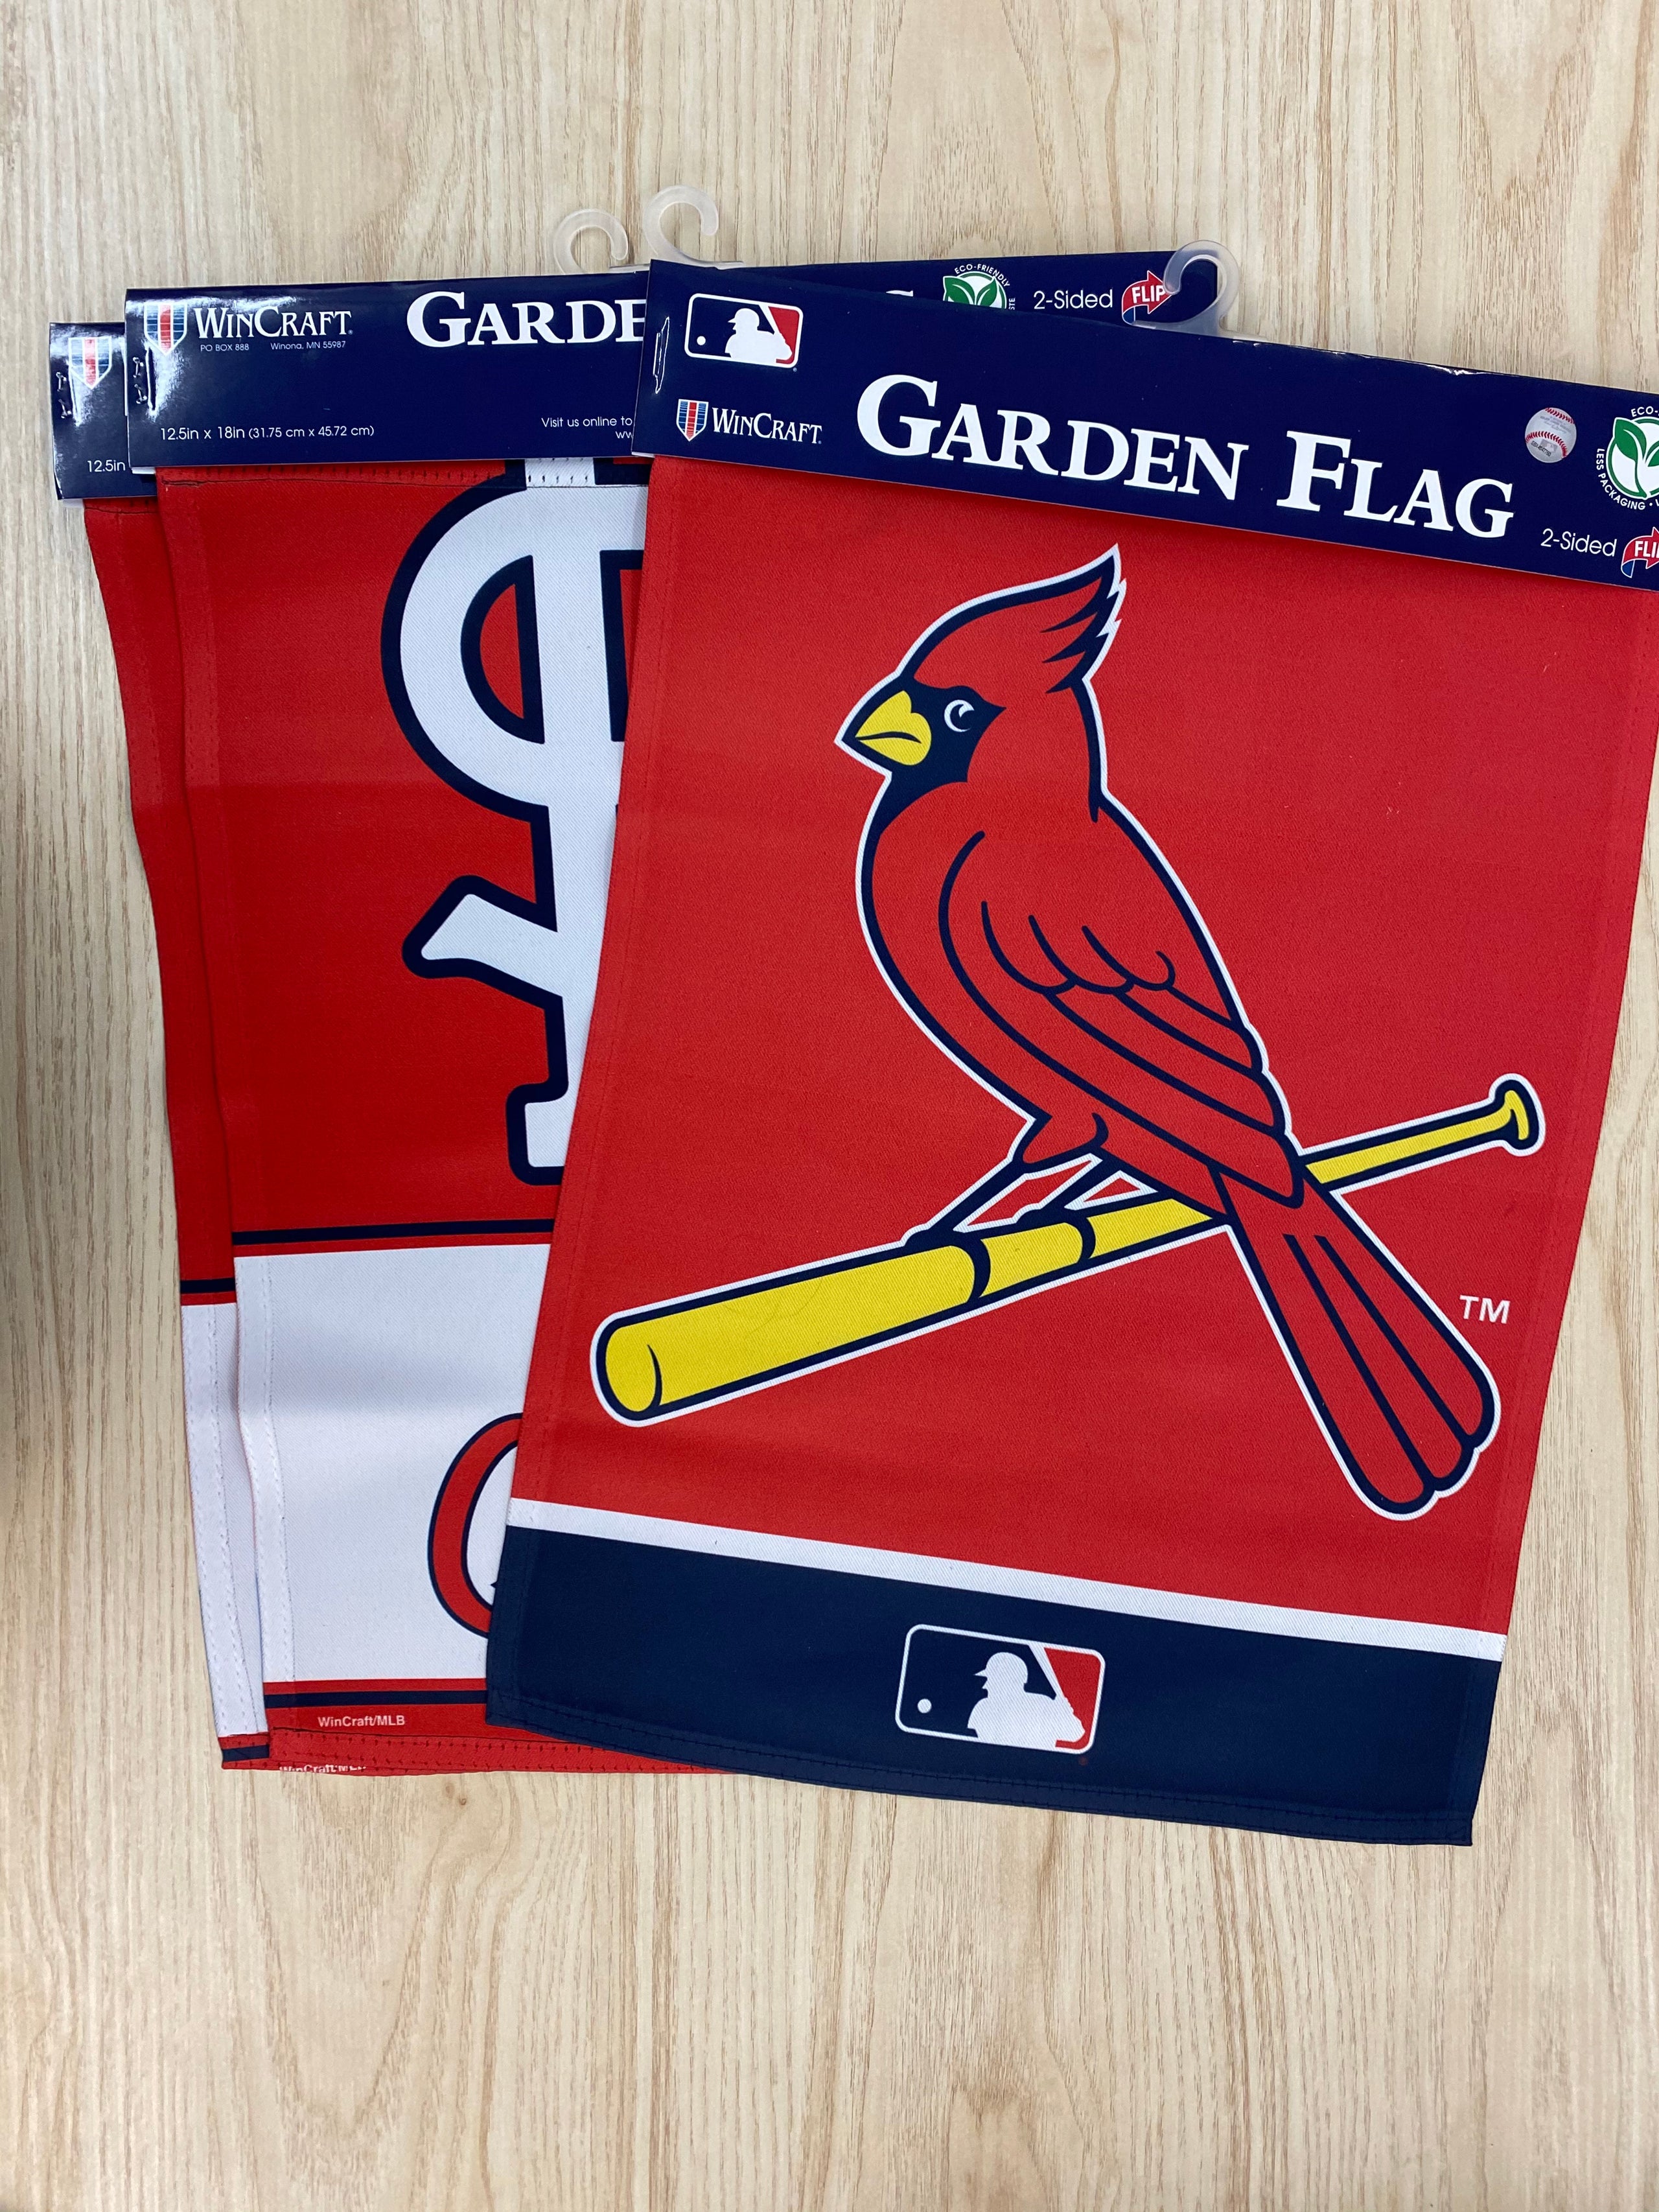 St. Louis Cardinals Flags, St. Louis Cardinals Garden Flags